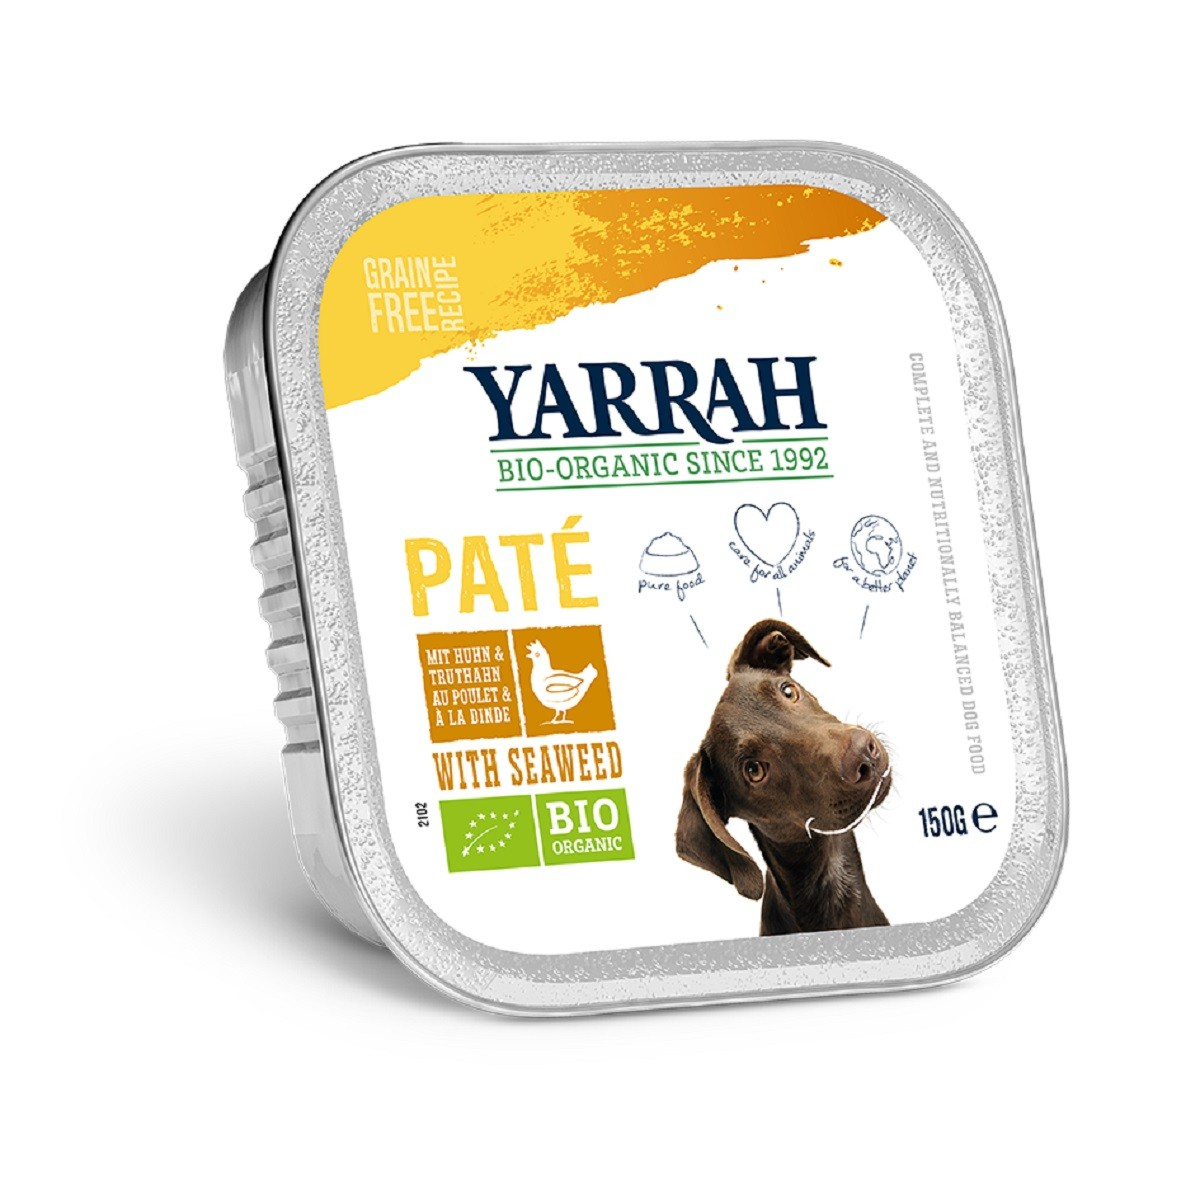 Patê Yarrah Bio 150g Sem Cereais para cão Adulto - 3 savores á escolha